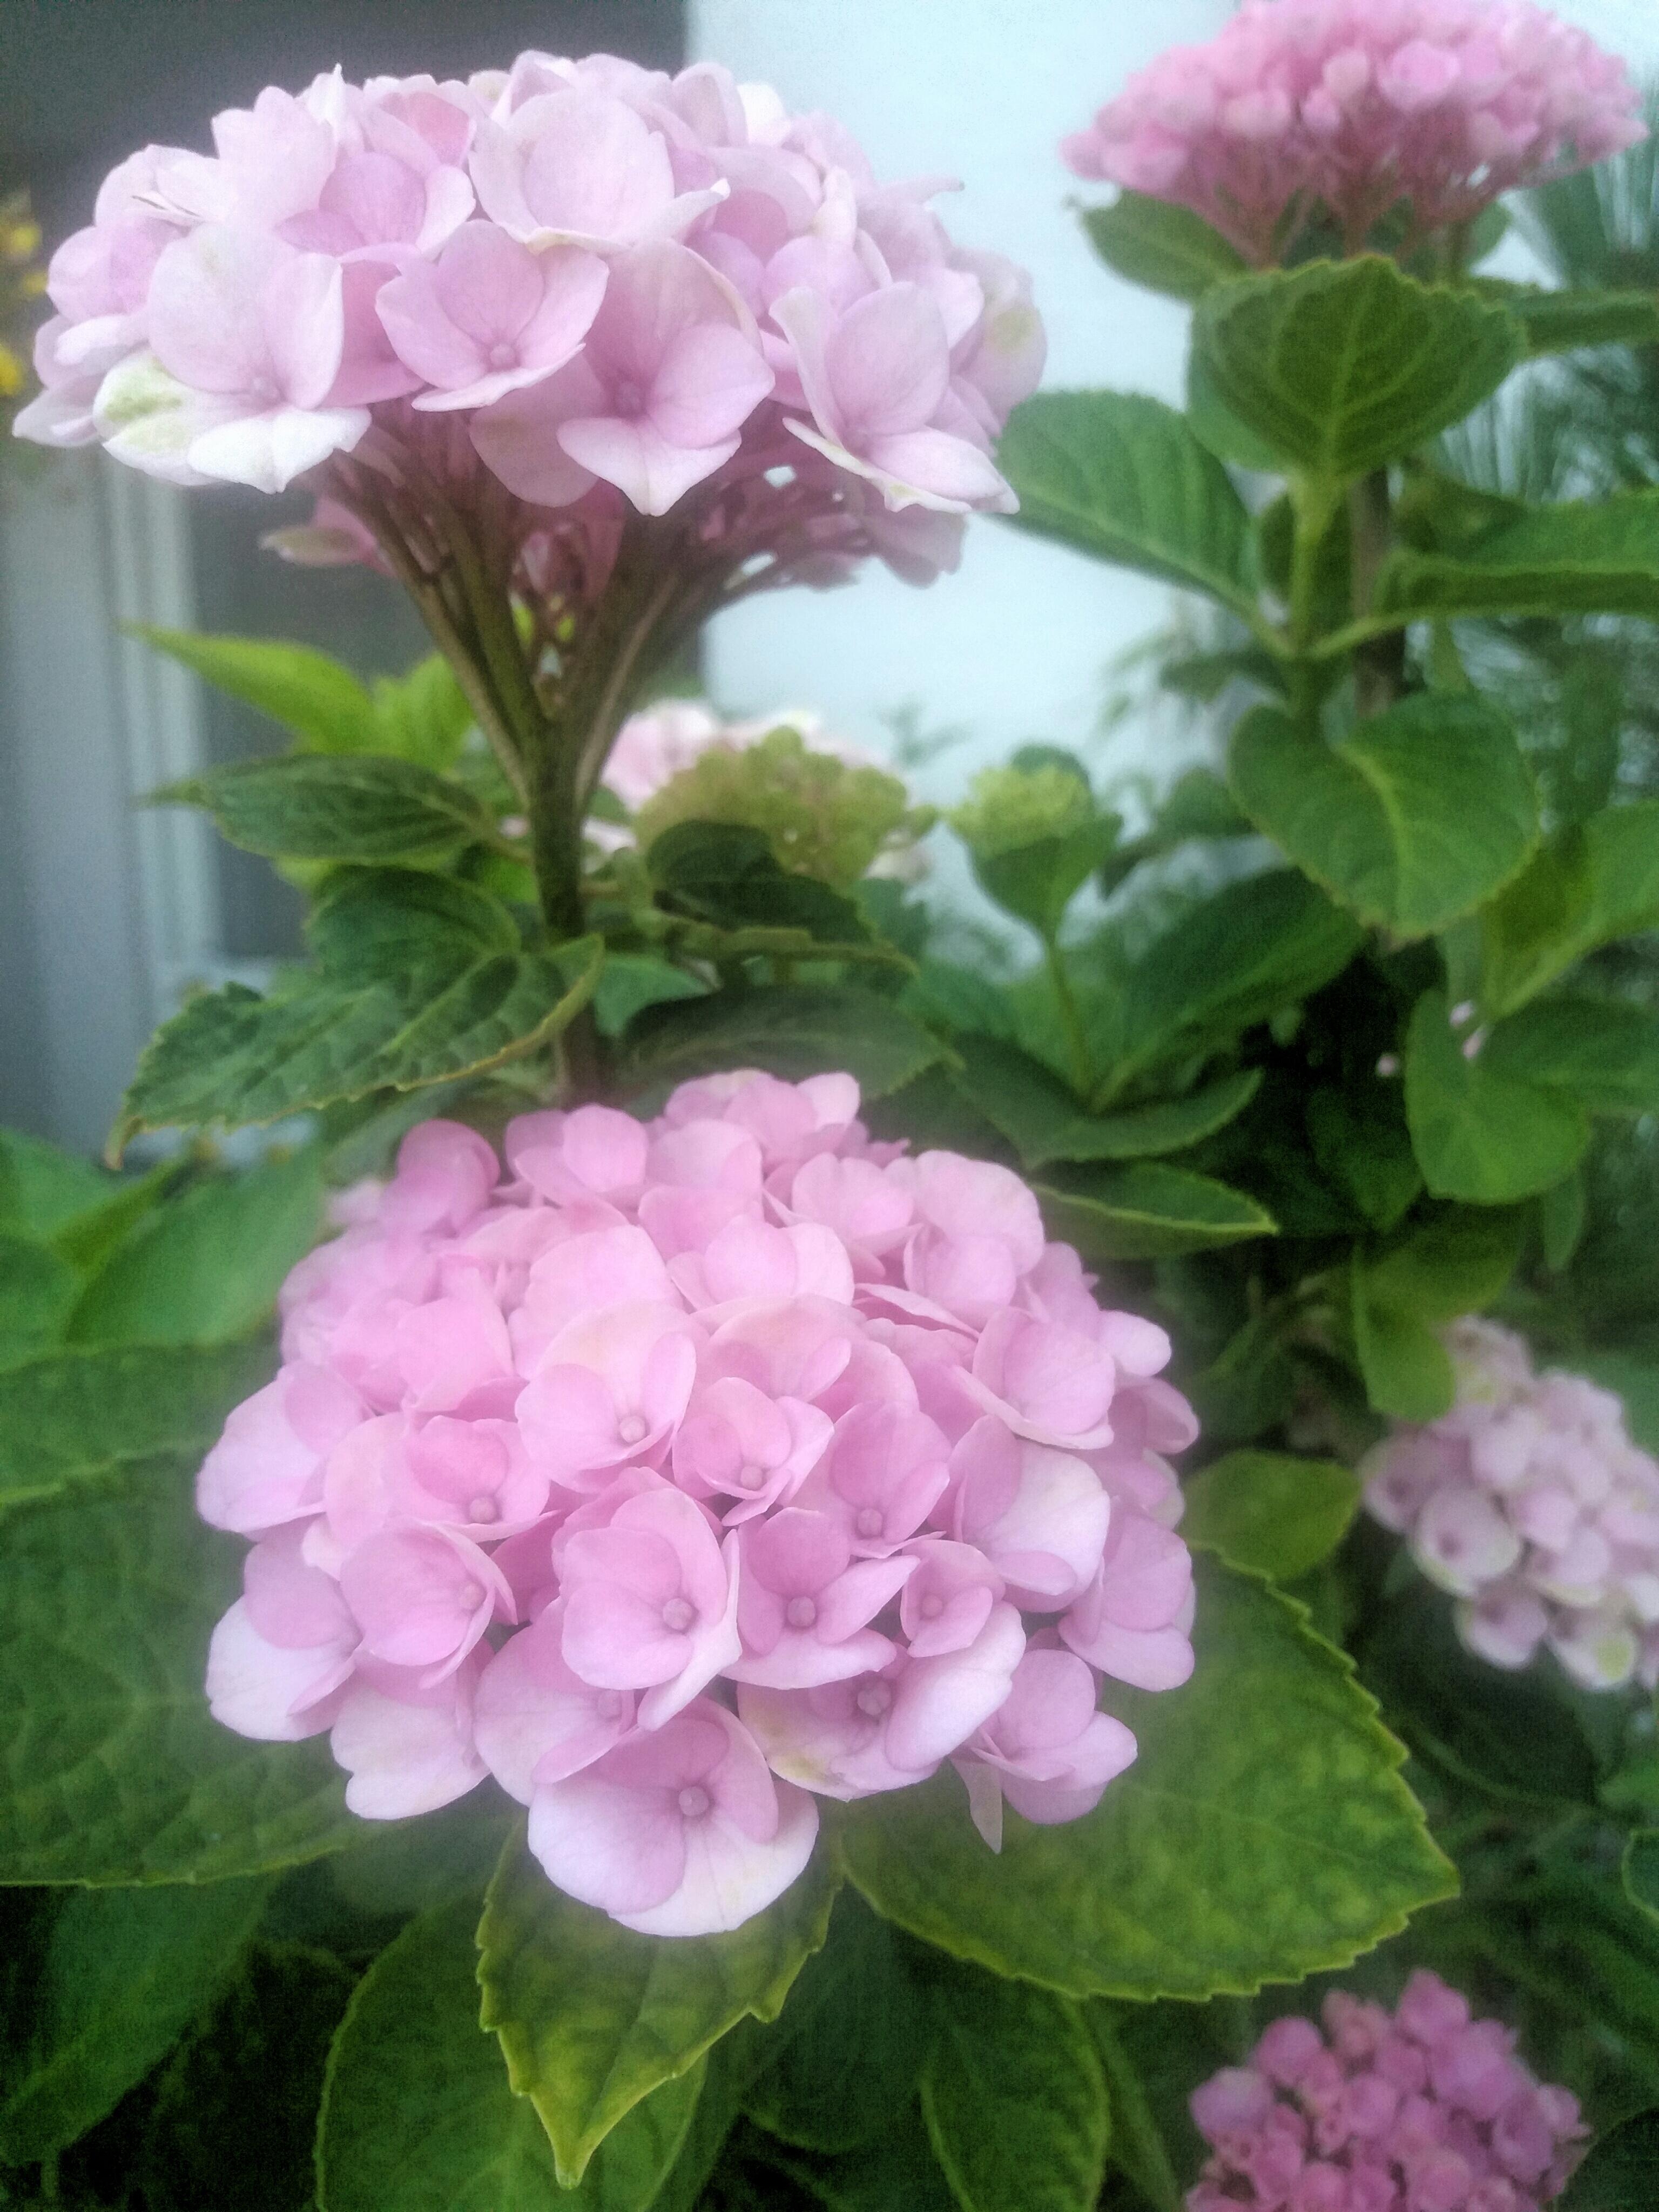 Schöne Pfingsten ❤️
#hortensien #blumenliebe #topfpflanze #rosa  